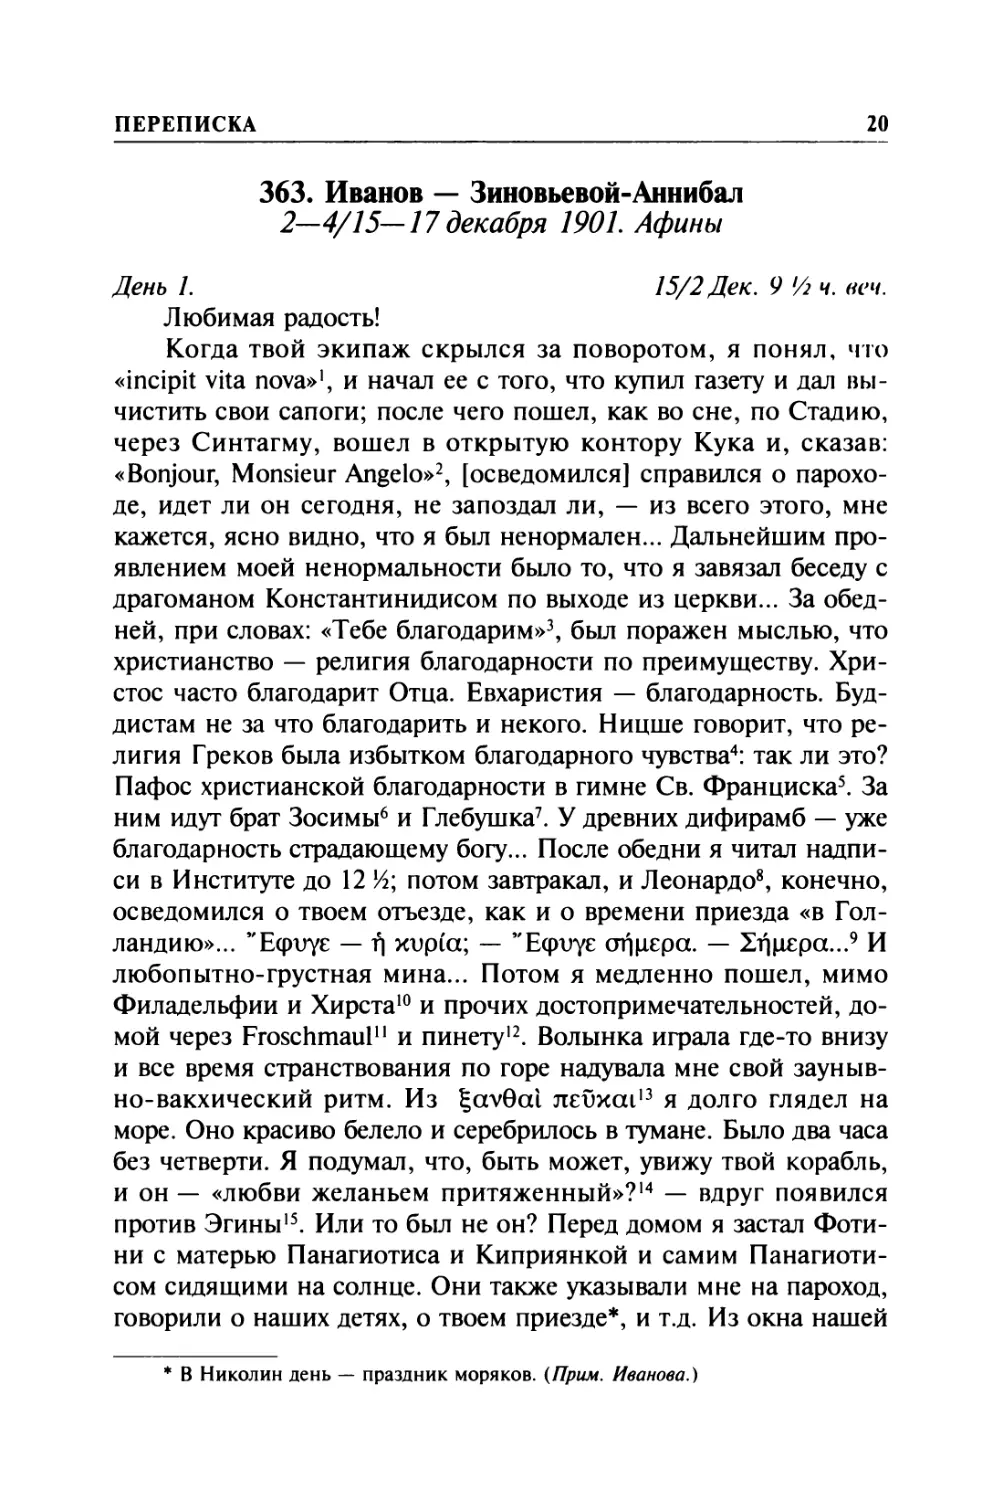 363. Иванов — Зиновьевой-Аннибал. 2—4/ 15—17 декабря 1901. Афины